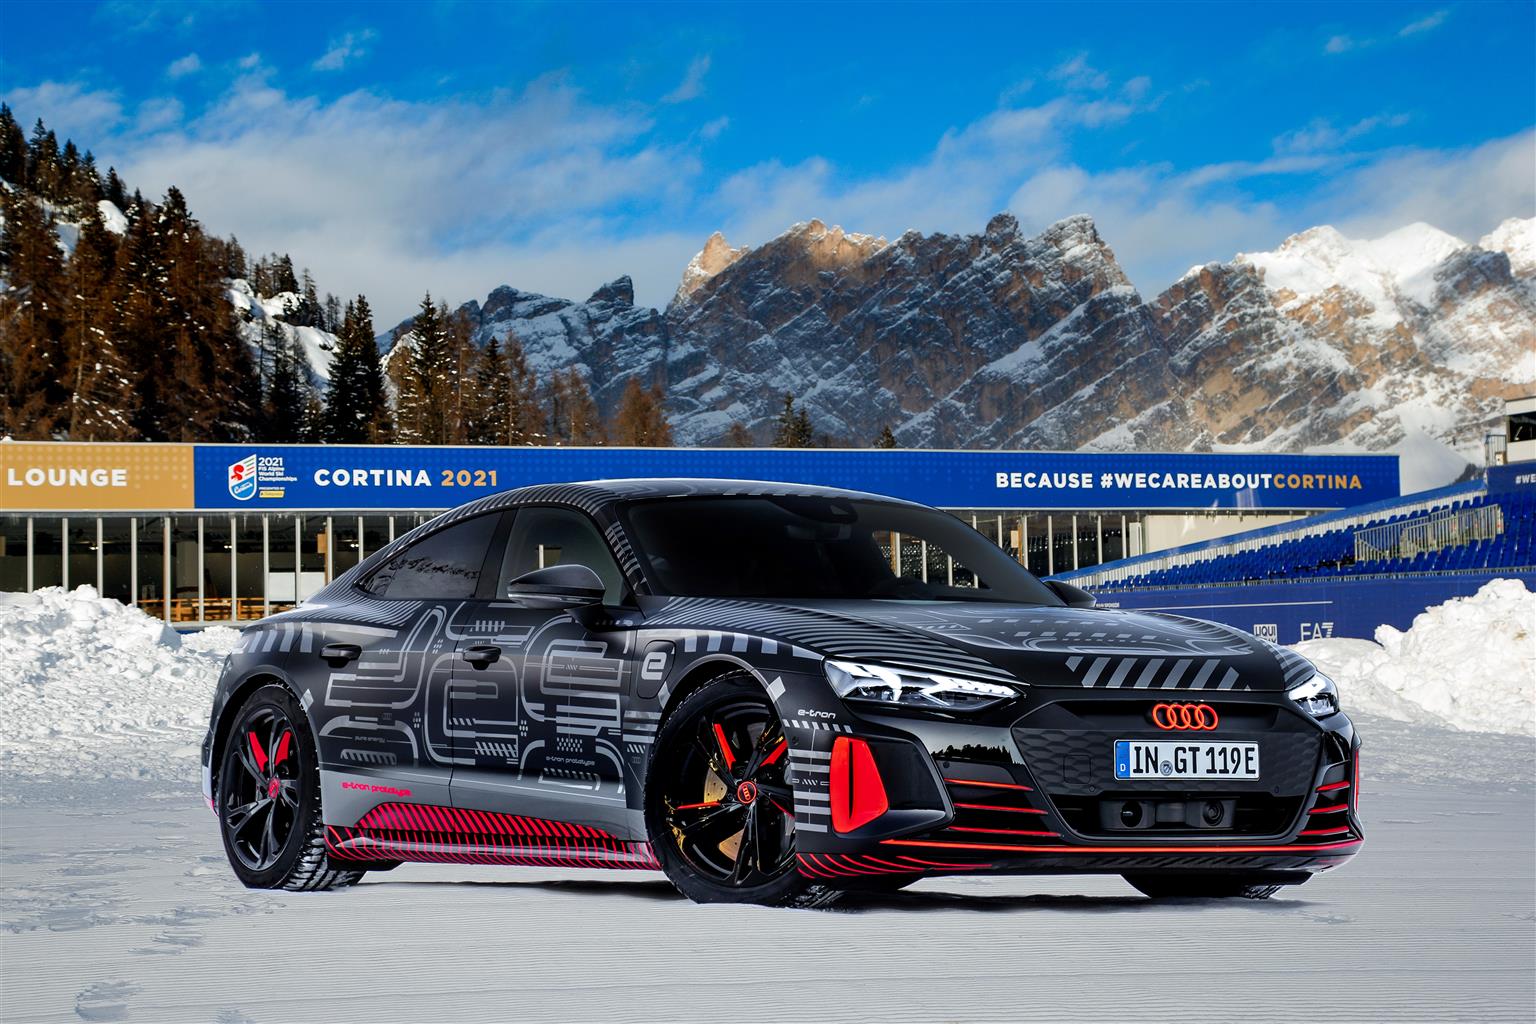 L'Audi RS e-tron GT versione prototipo pronta ad inaugurare i Mondiali di Cortina, in scena dal 7 al 21 febbraio. Sarà esposta in Piazza Roma.